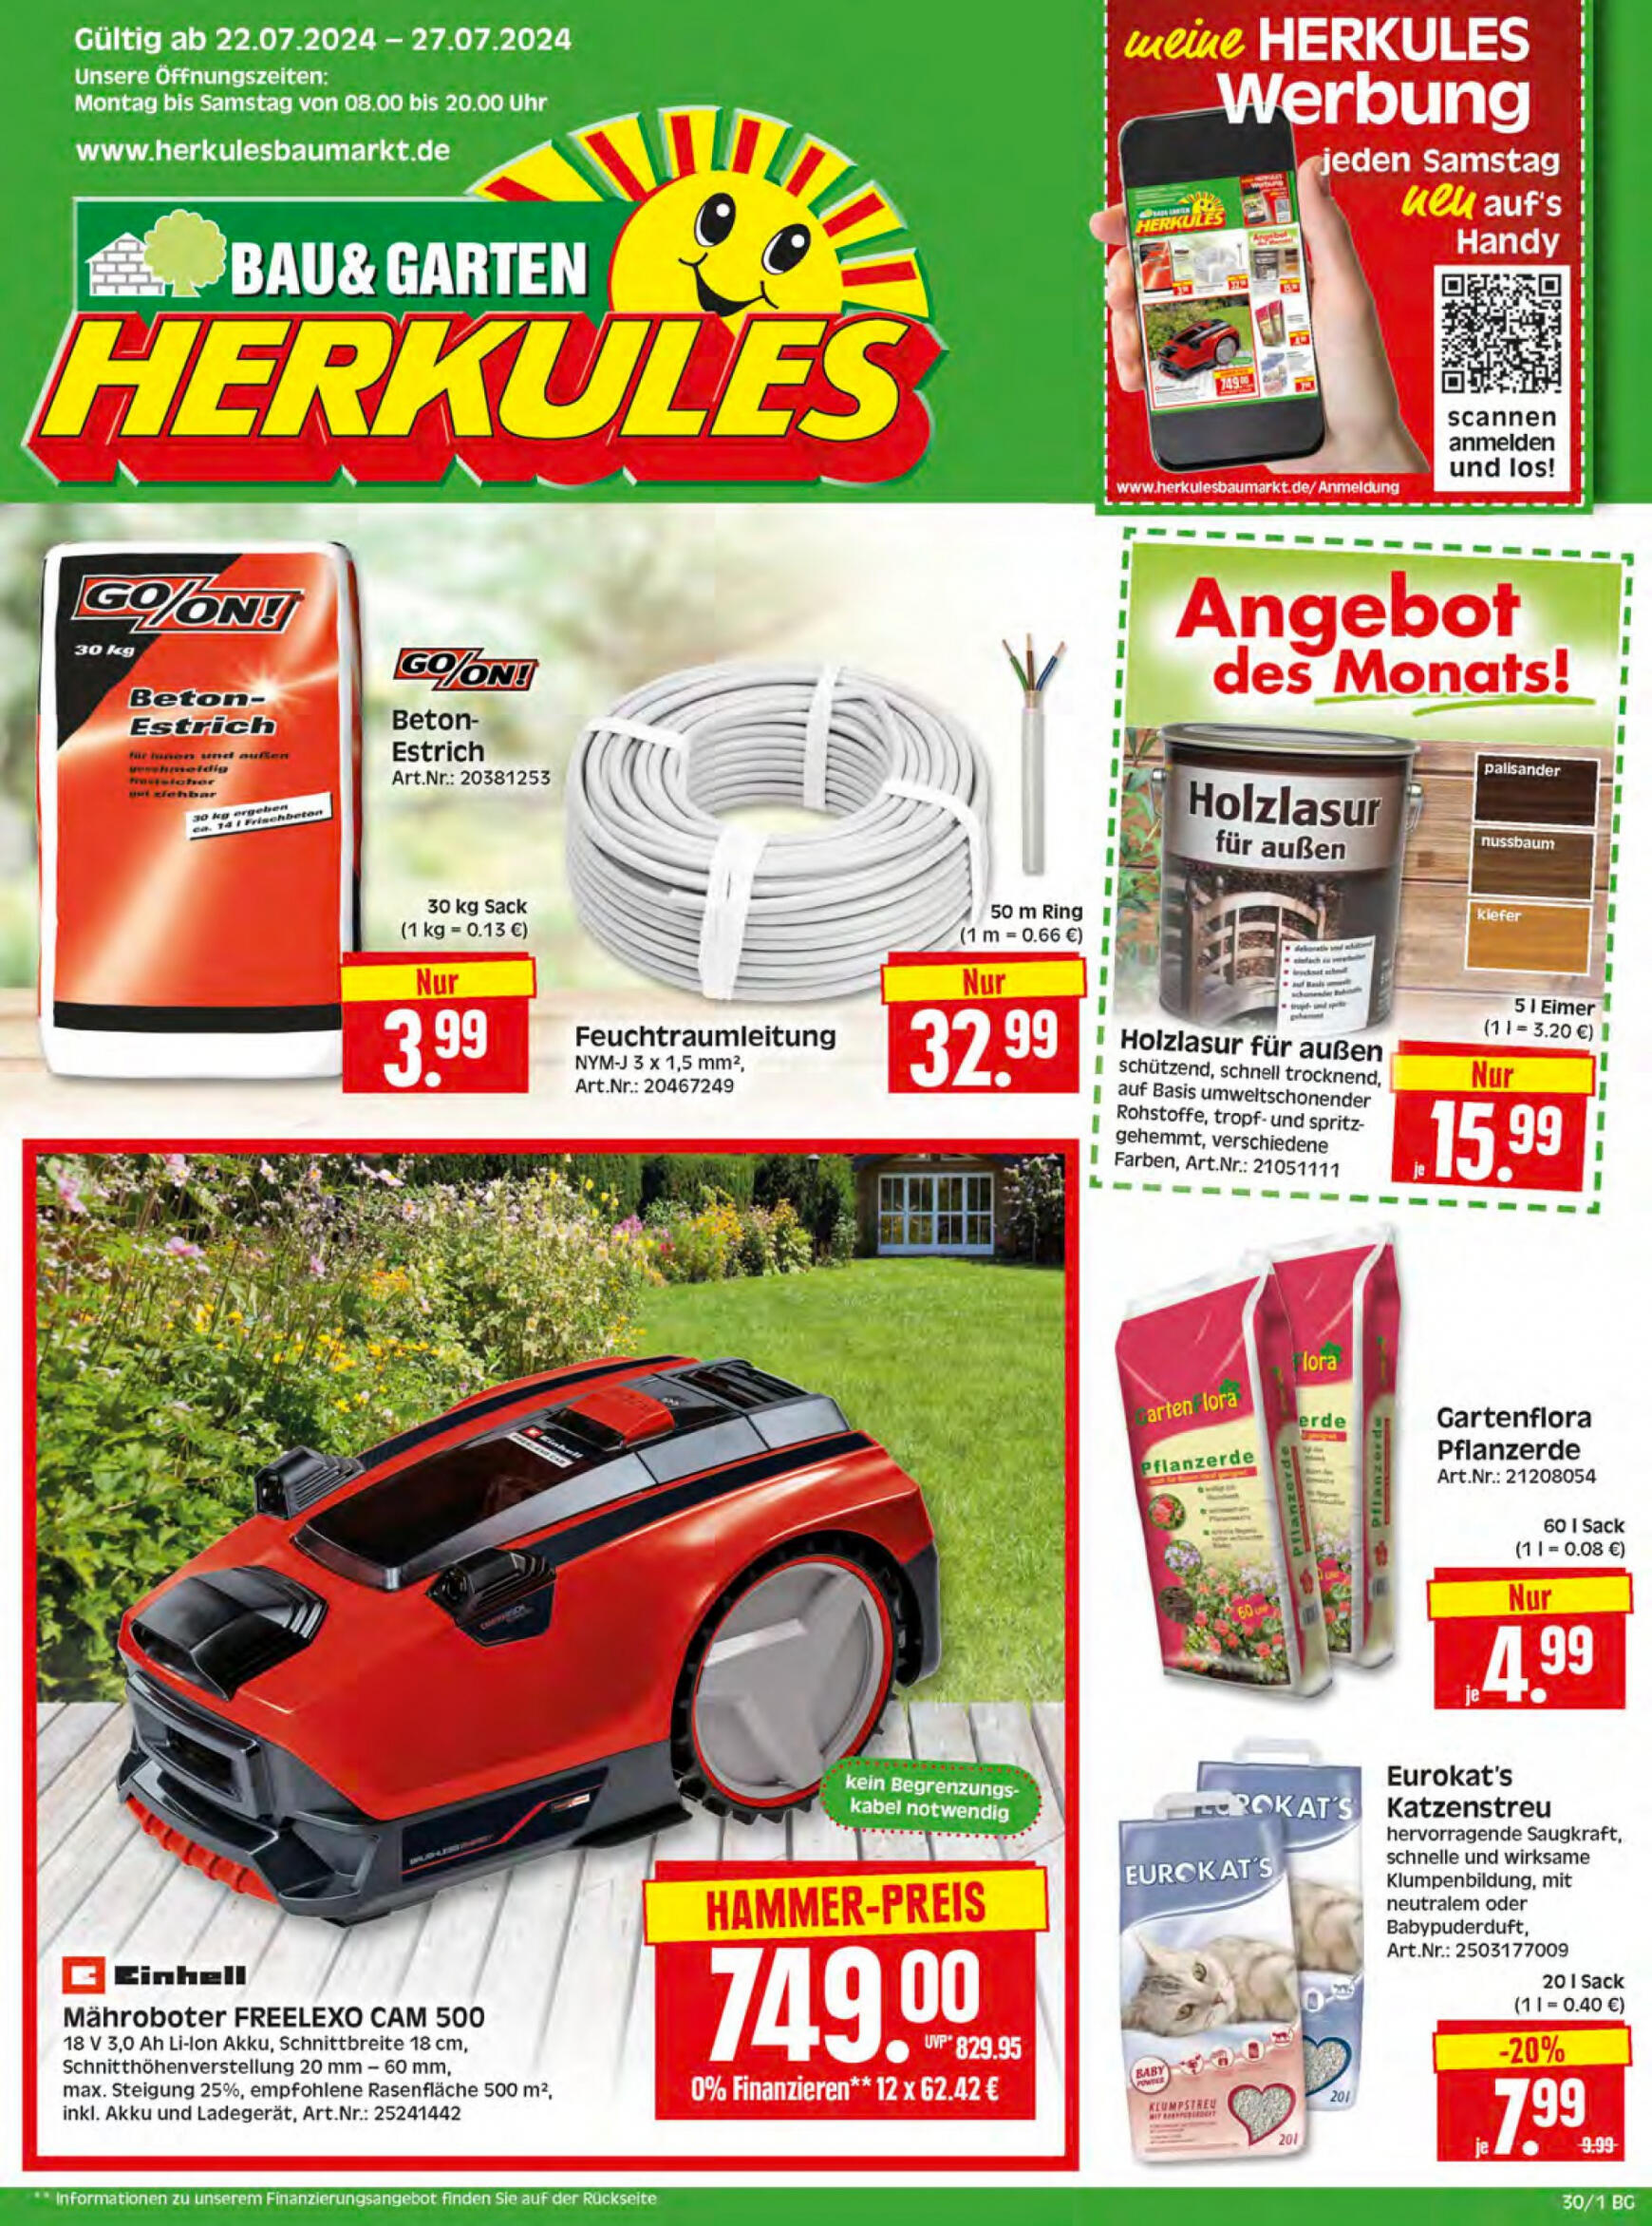 herkules - Flyer Herkules - Bau und Garten aktuell 22.07. - 27.07.